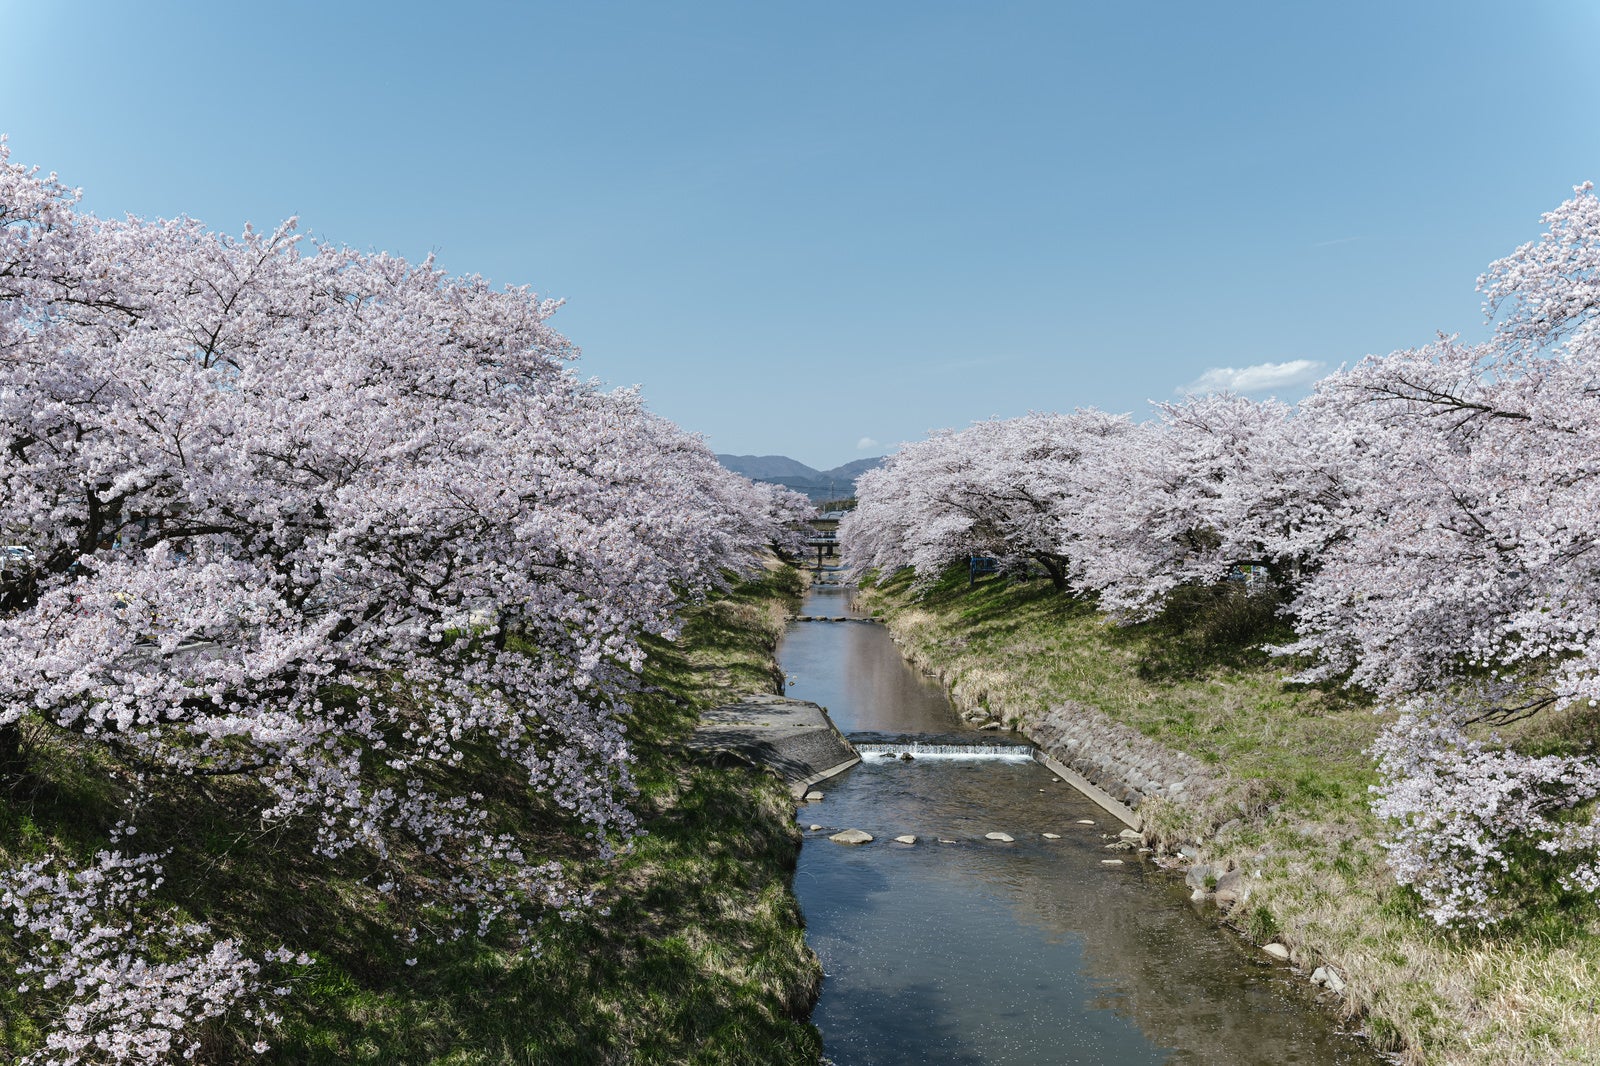 「青い空と笹原川沿いに咲き誇る千本桜」の写真